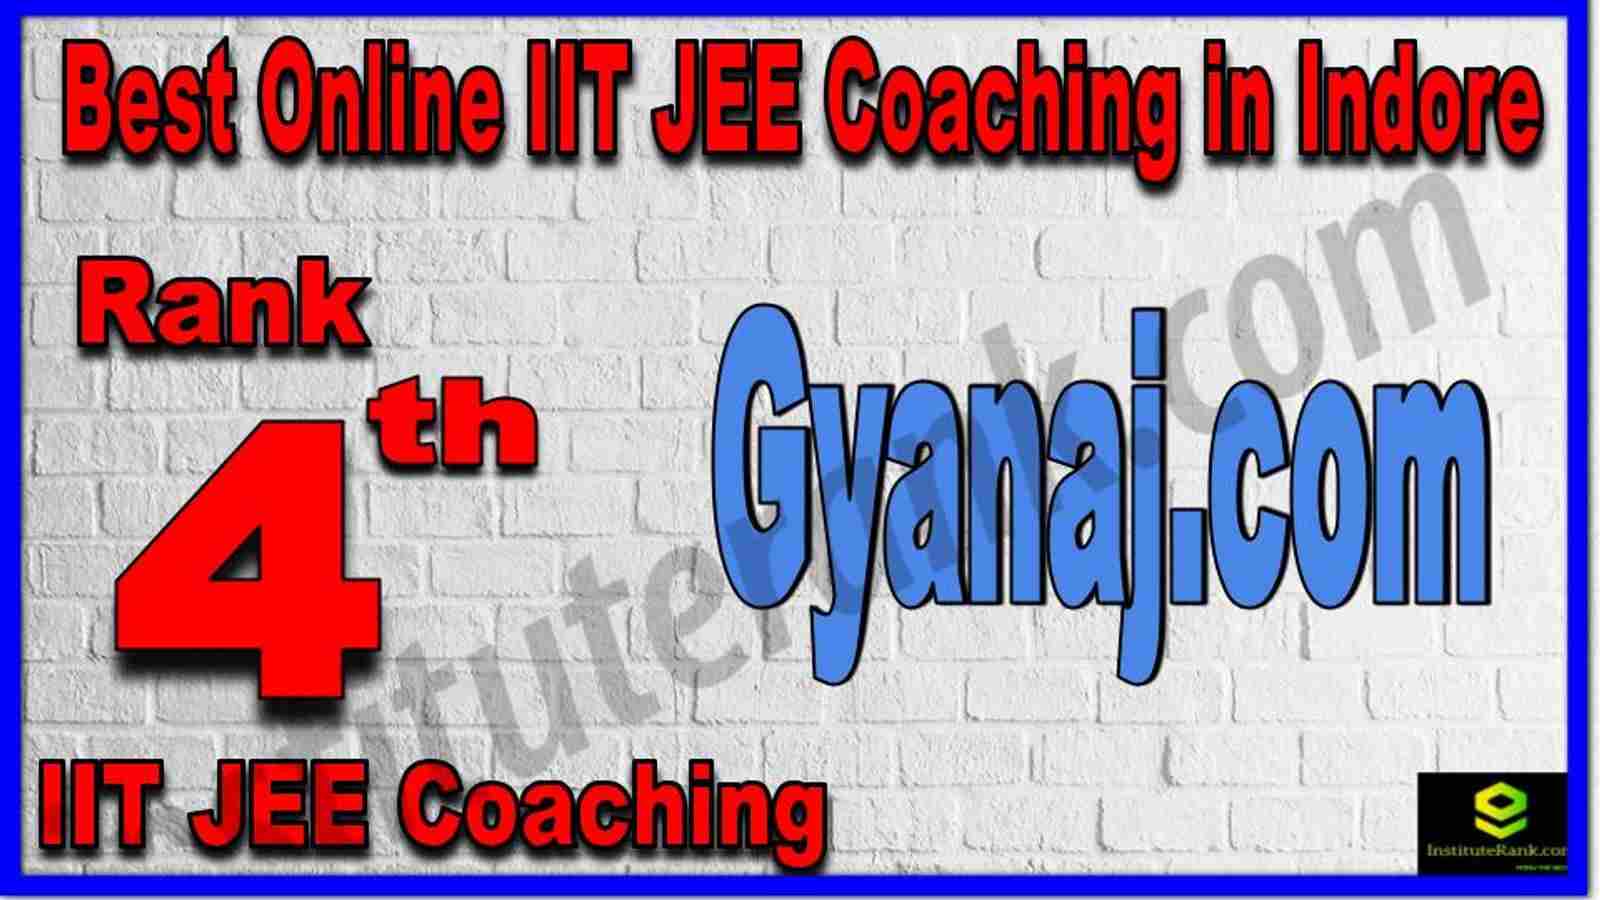 Rank 4th Best Online IIT JEE Coaching in Indore